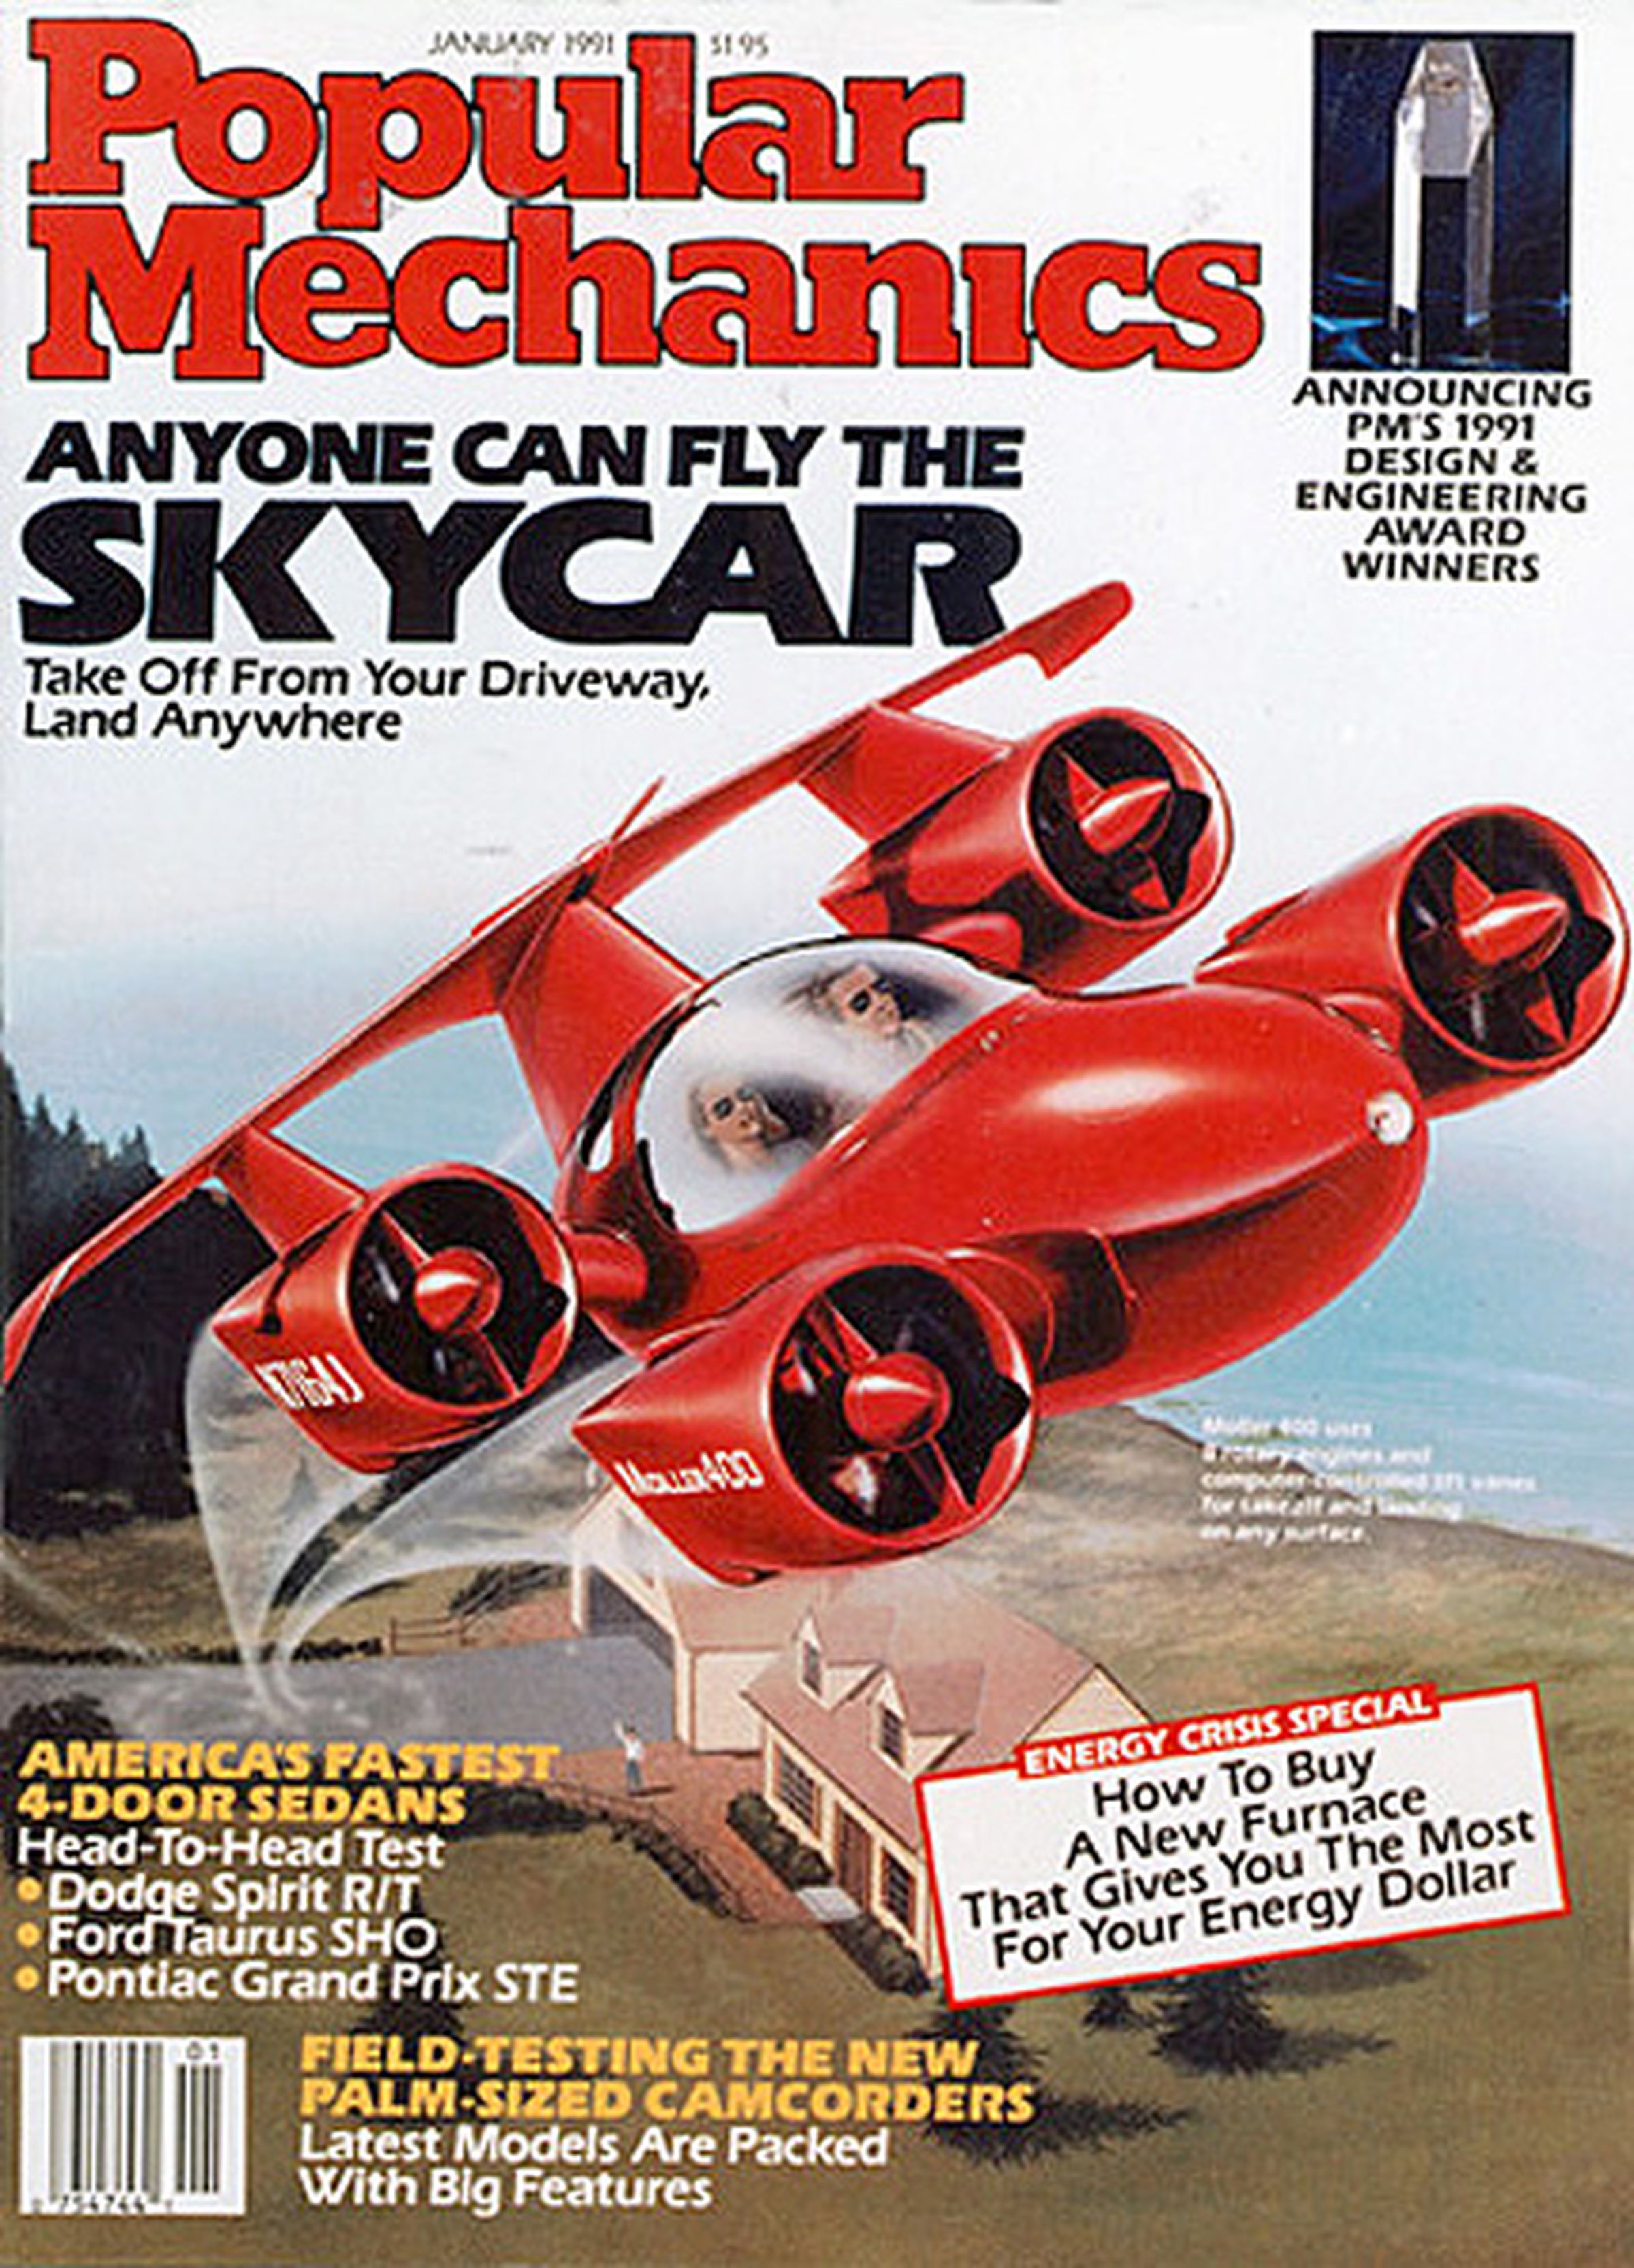 PopMech 1991 Moller SkyCar